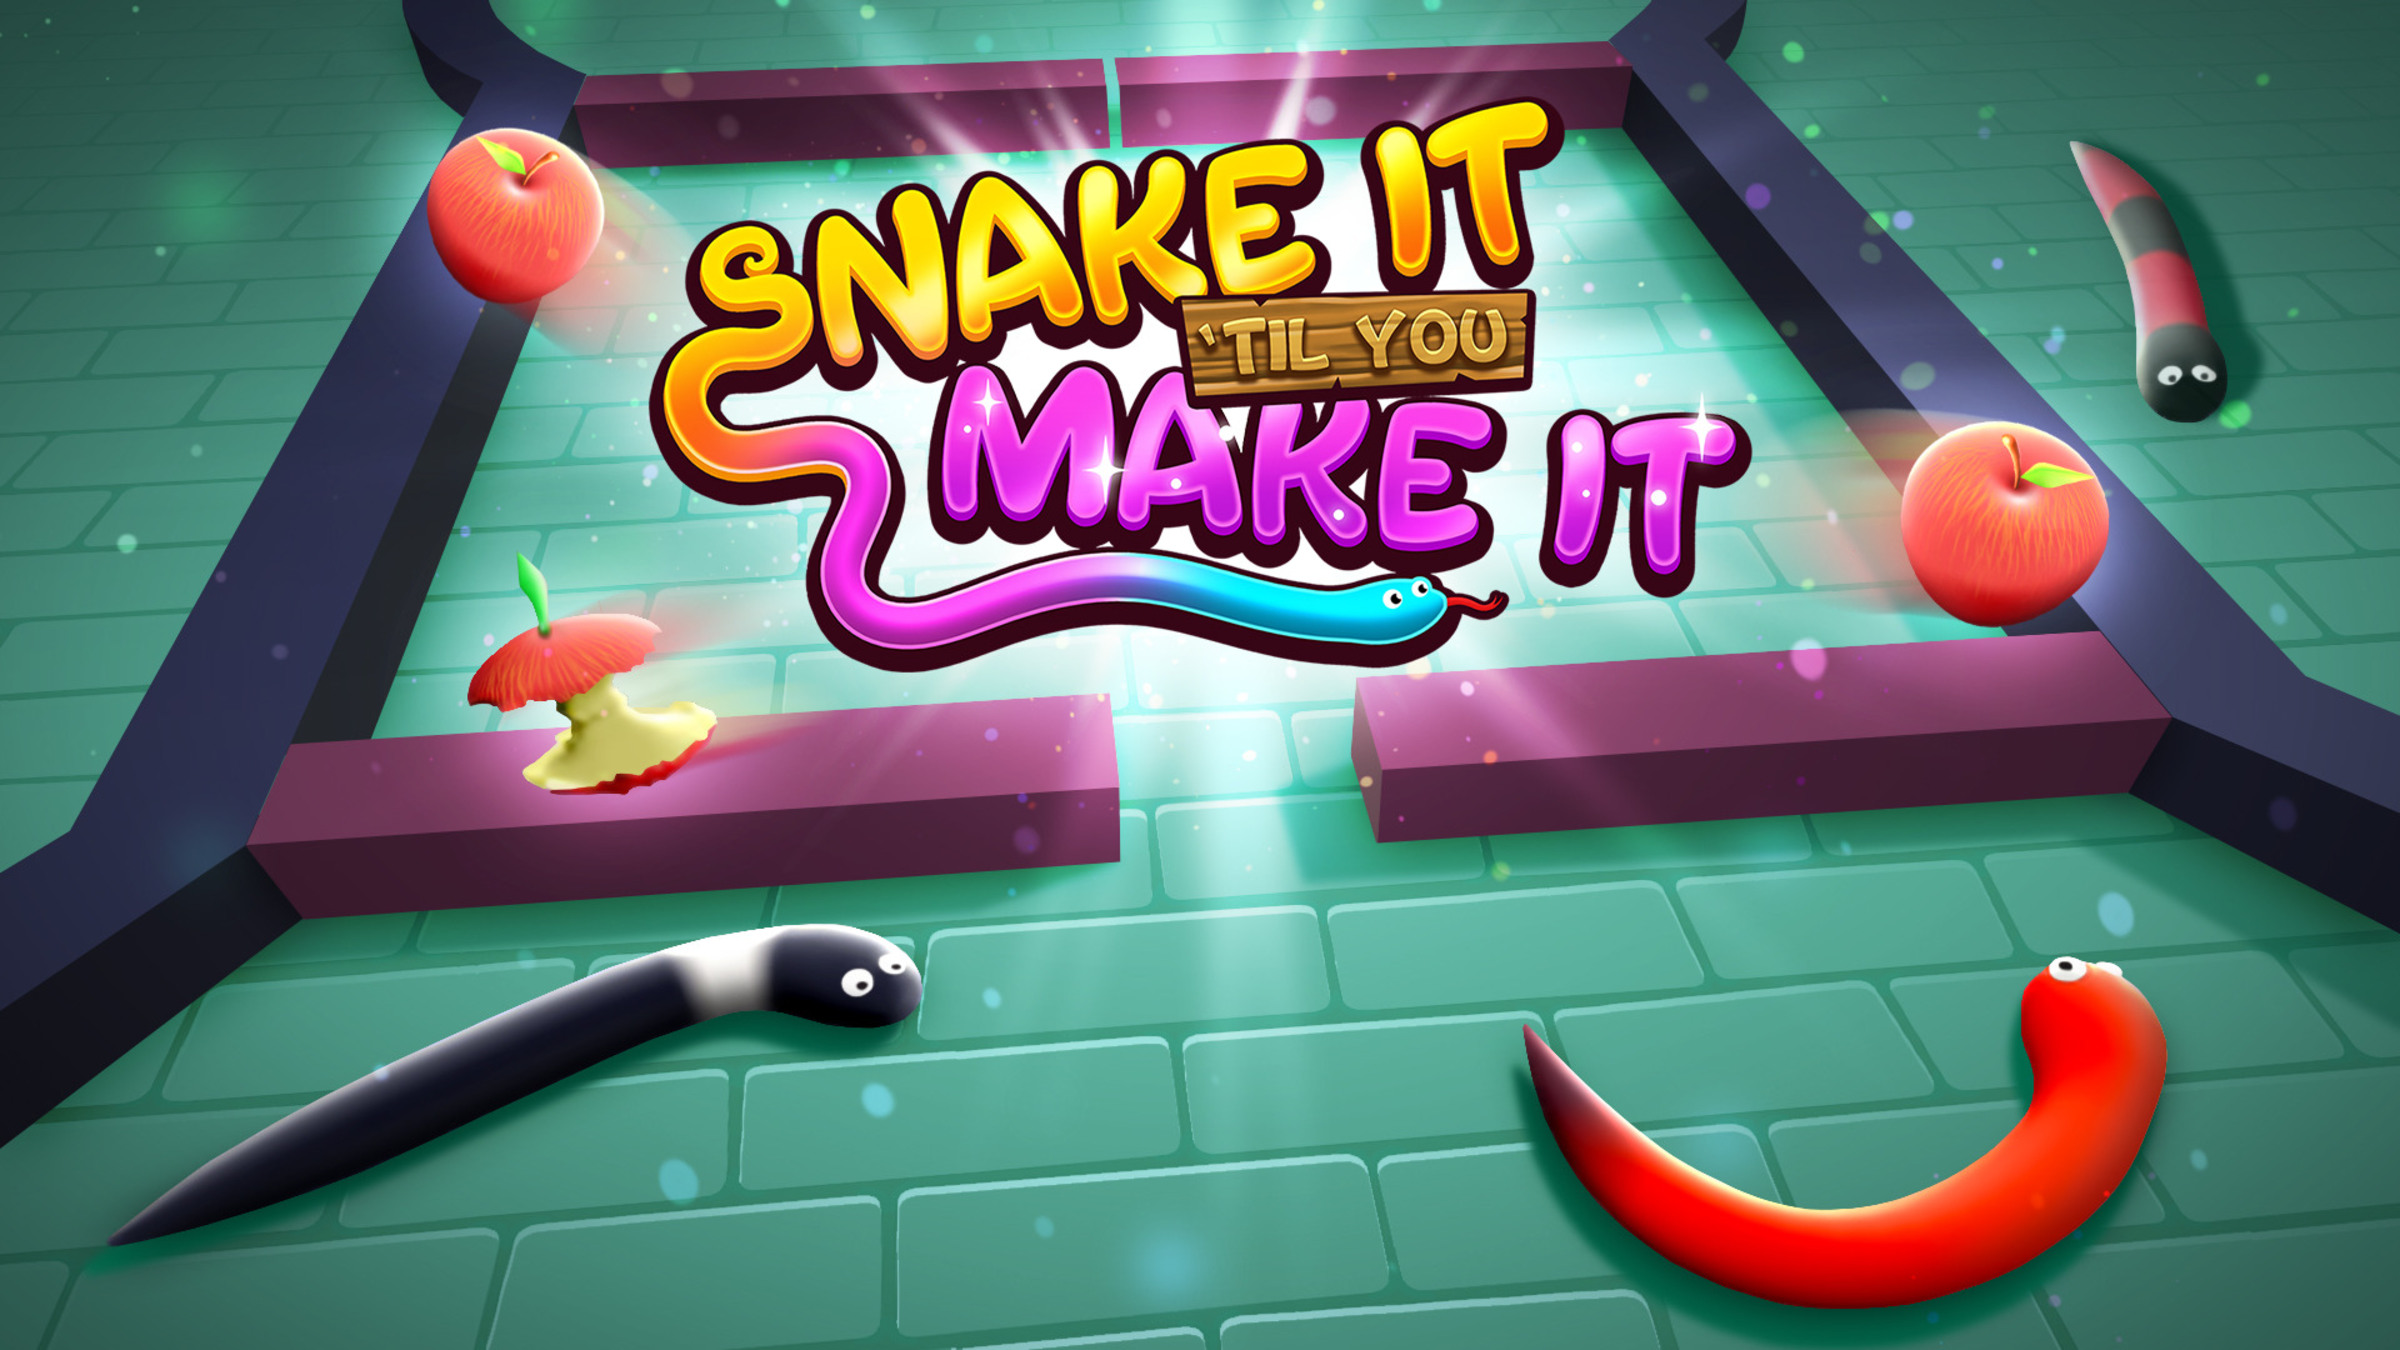 Snake Games Online 🕹️